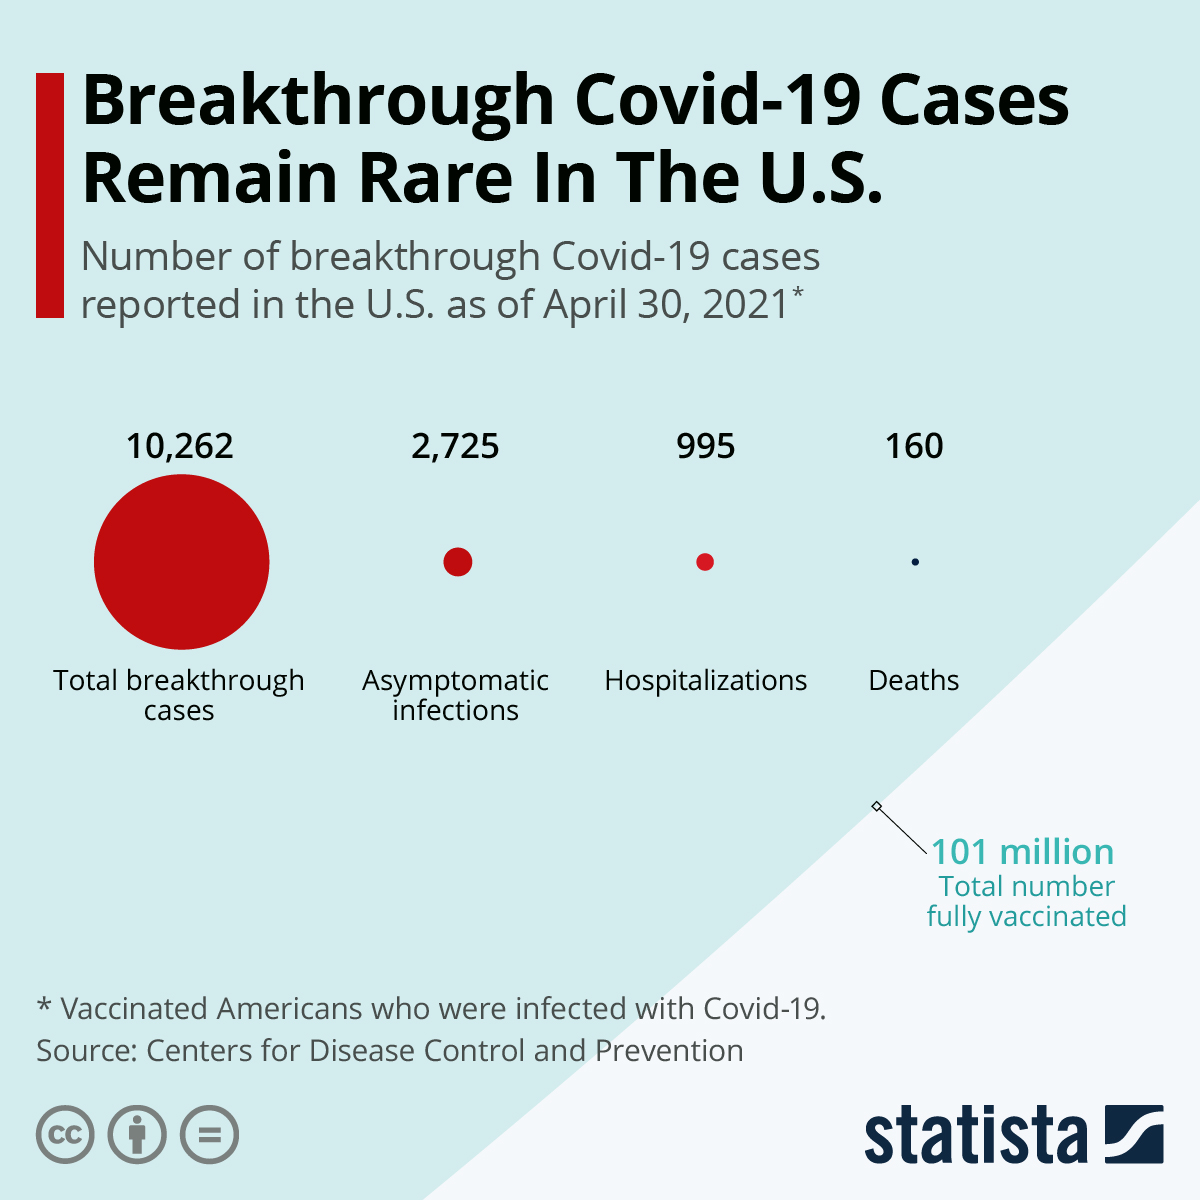 Breakthrough Covid-19 Cases Remain Rare In The U.S.